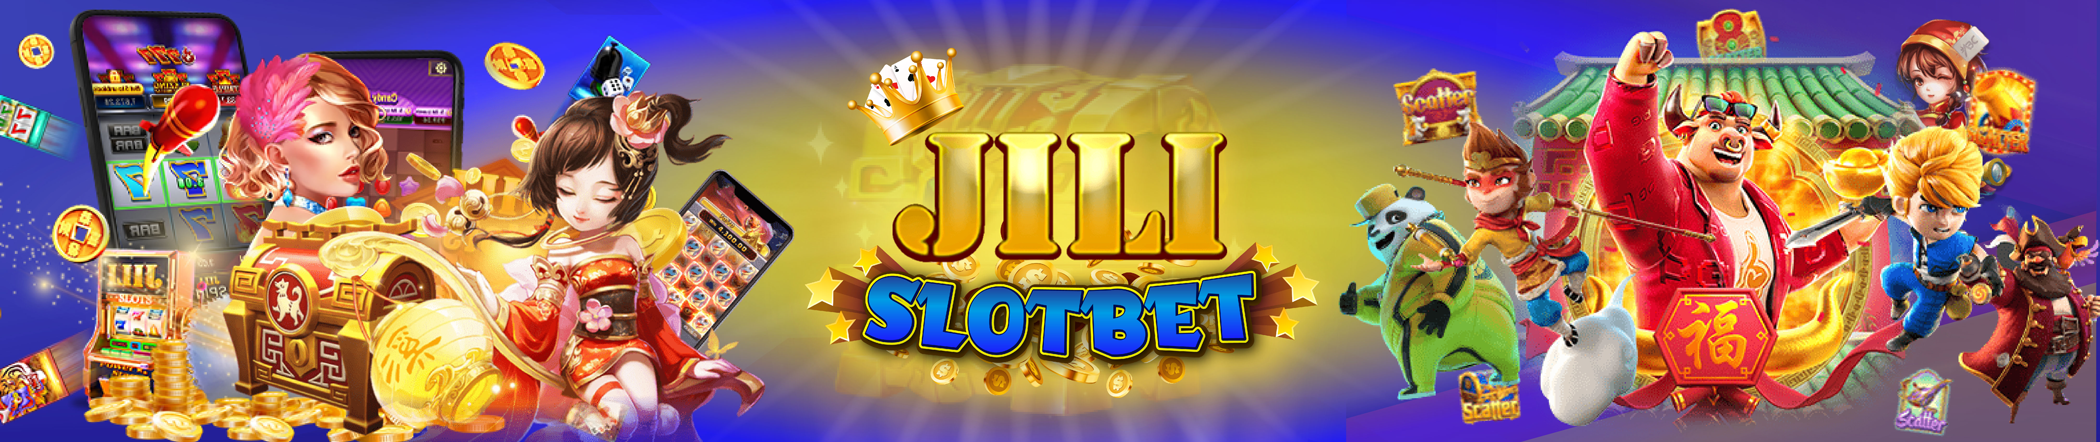 Jili Slot สล็อตเว็บตรง เว็บสล็อต อันดับ 1 พร้อมเกมออนไลน์ เกมยิงปลา เกมยิงป้อม สุดแสนสนุก